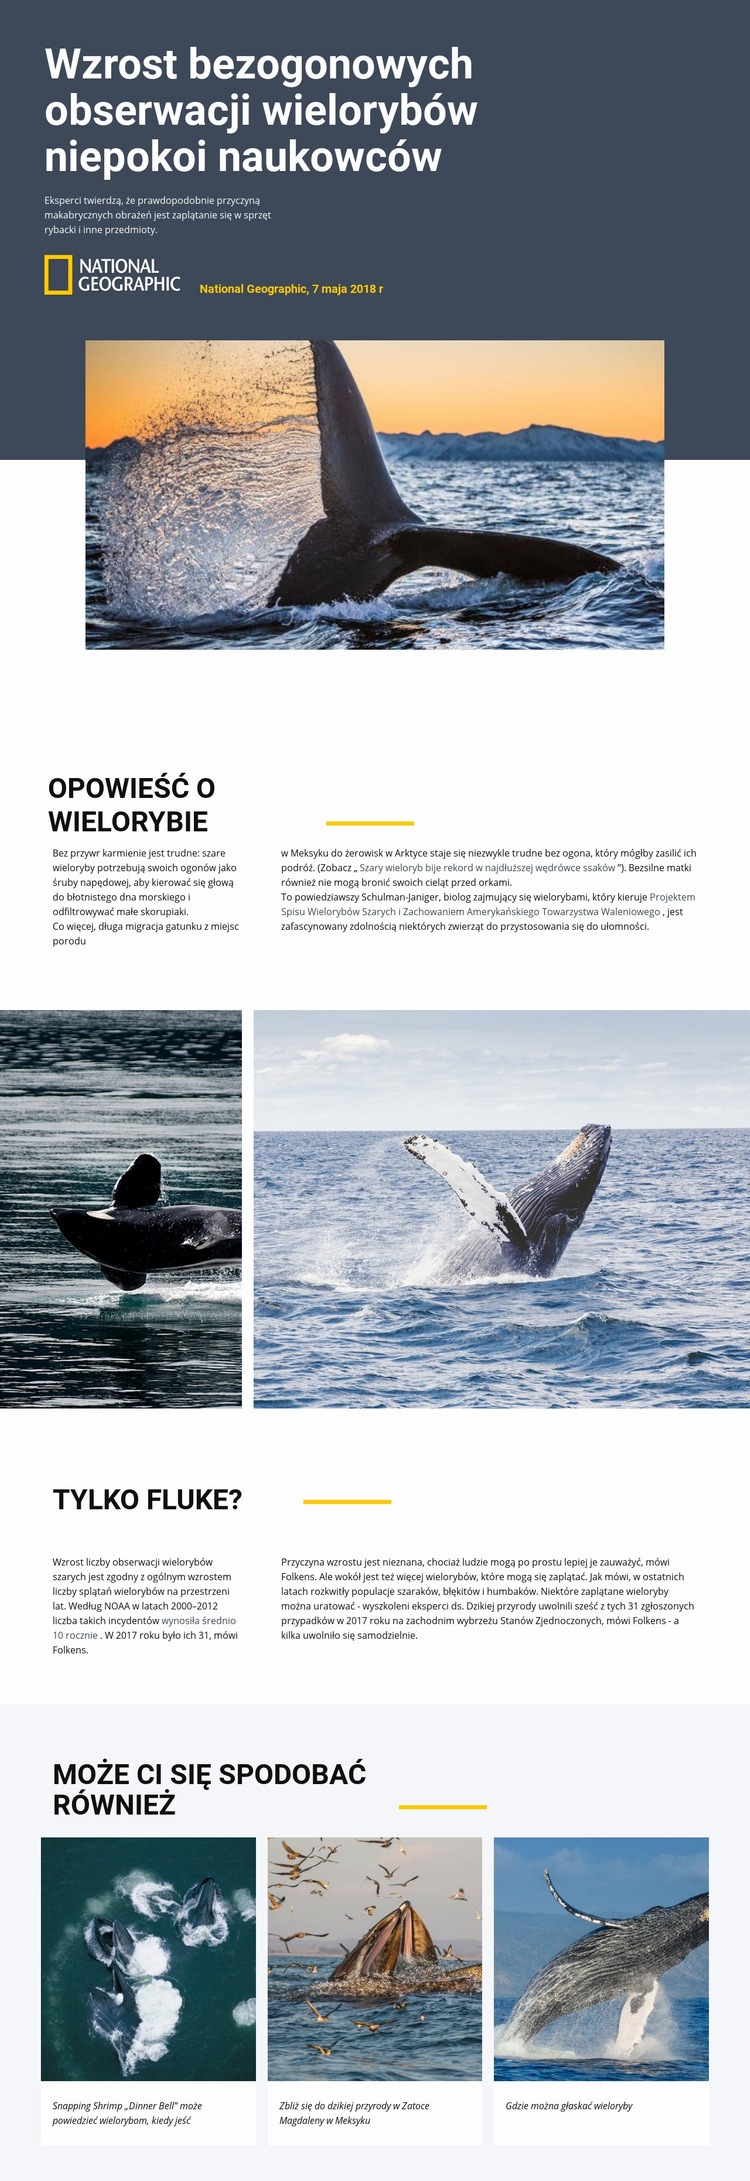 Centrum obserwacji wielorybów Wstęp